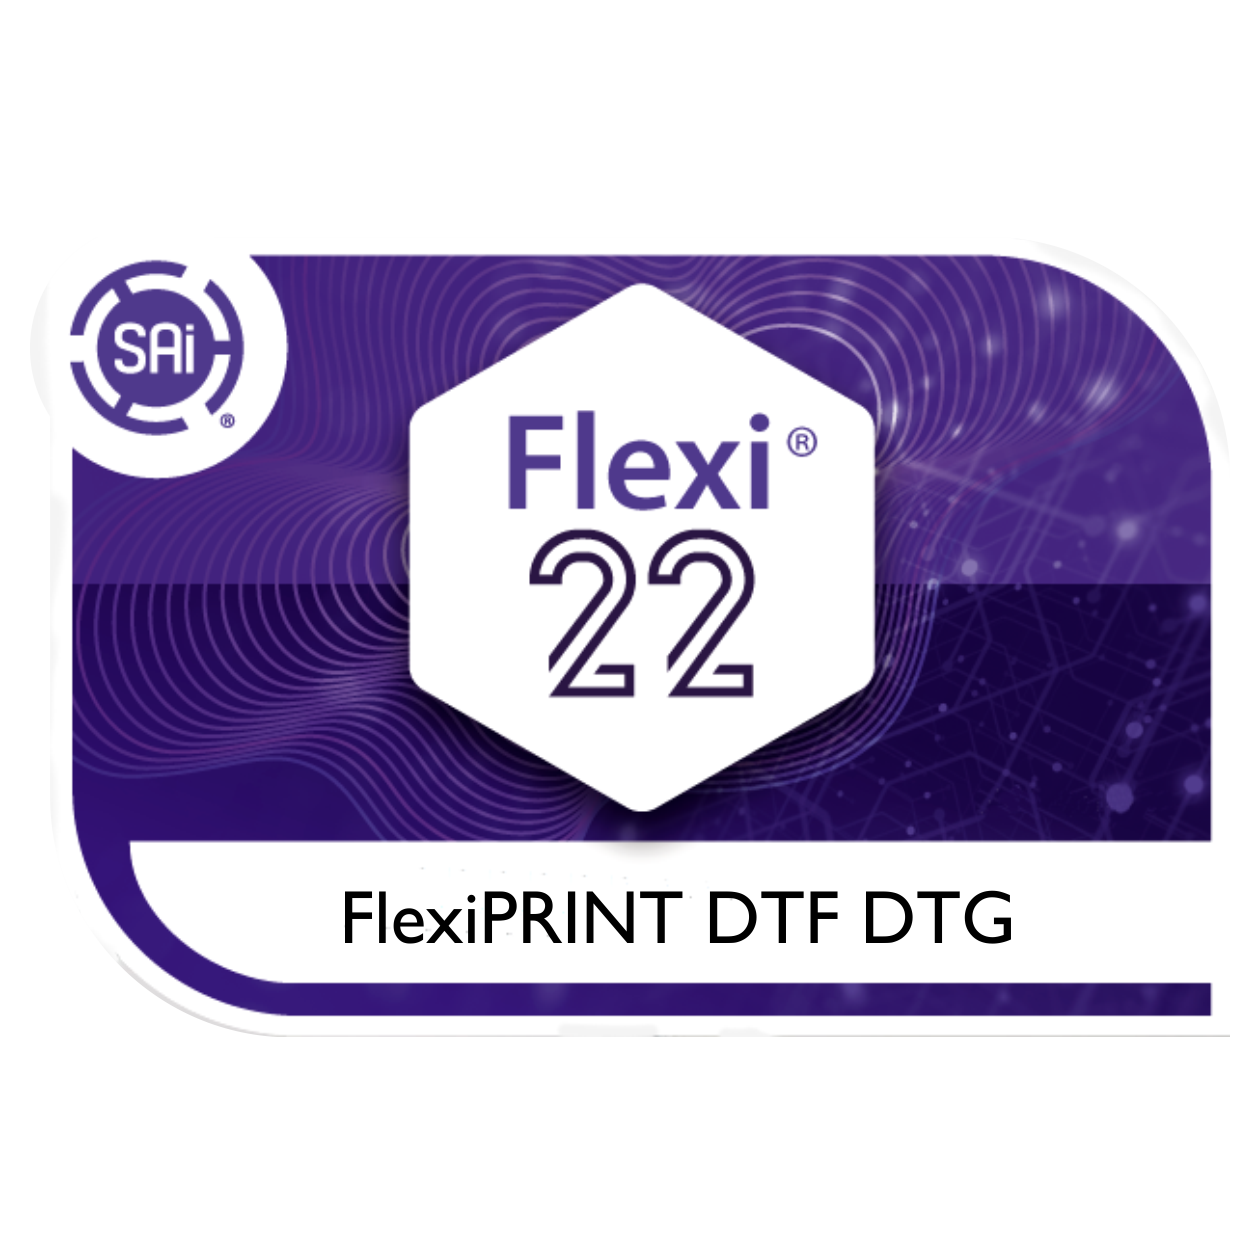 FlexiPRINT DTF/DTG Software v22